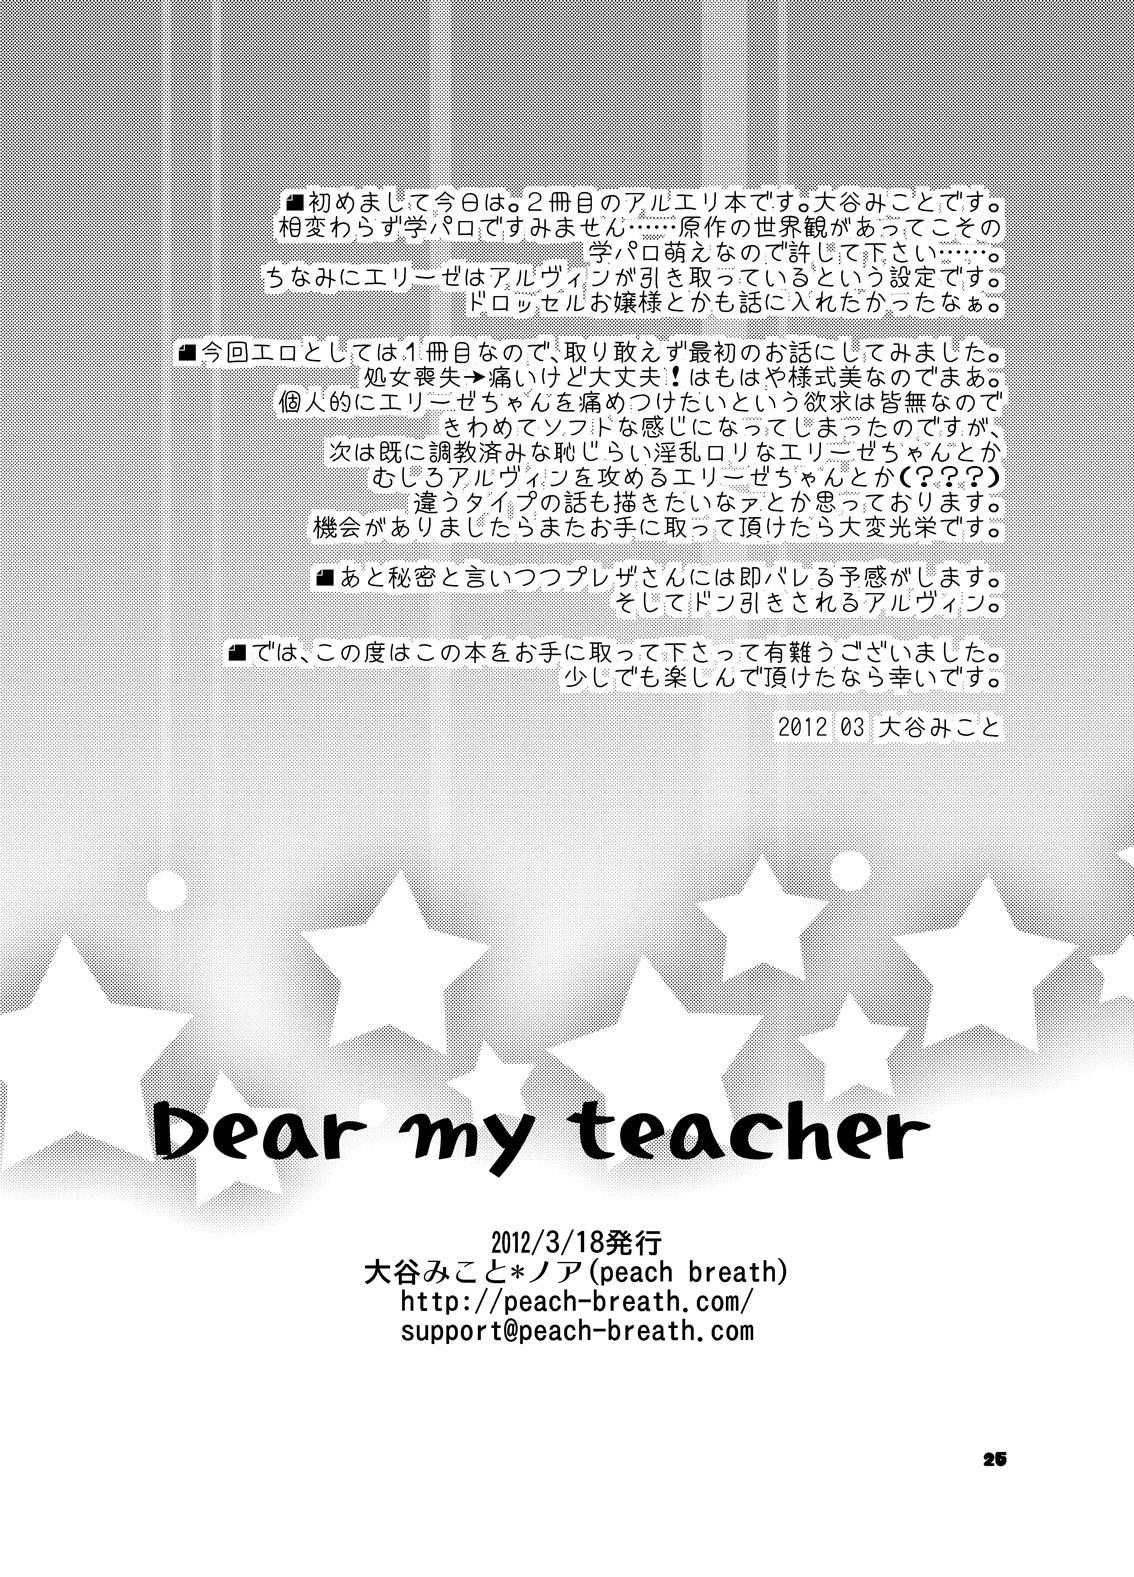 Dear my teacher 24